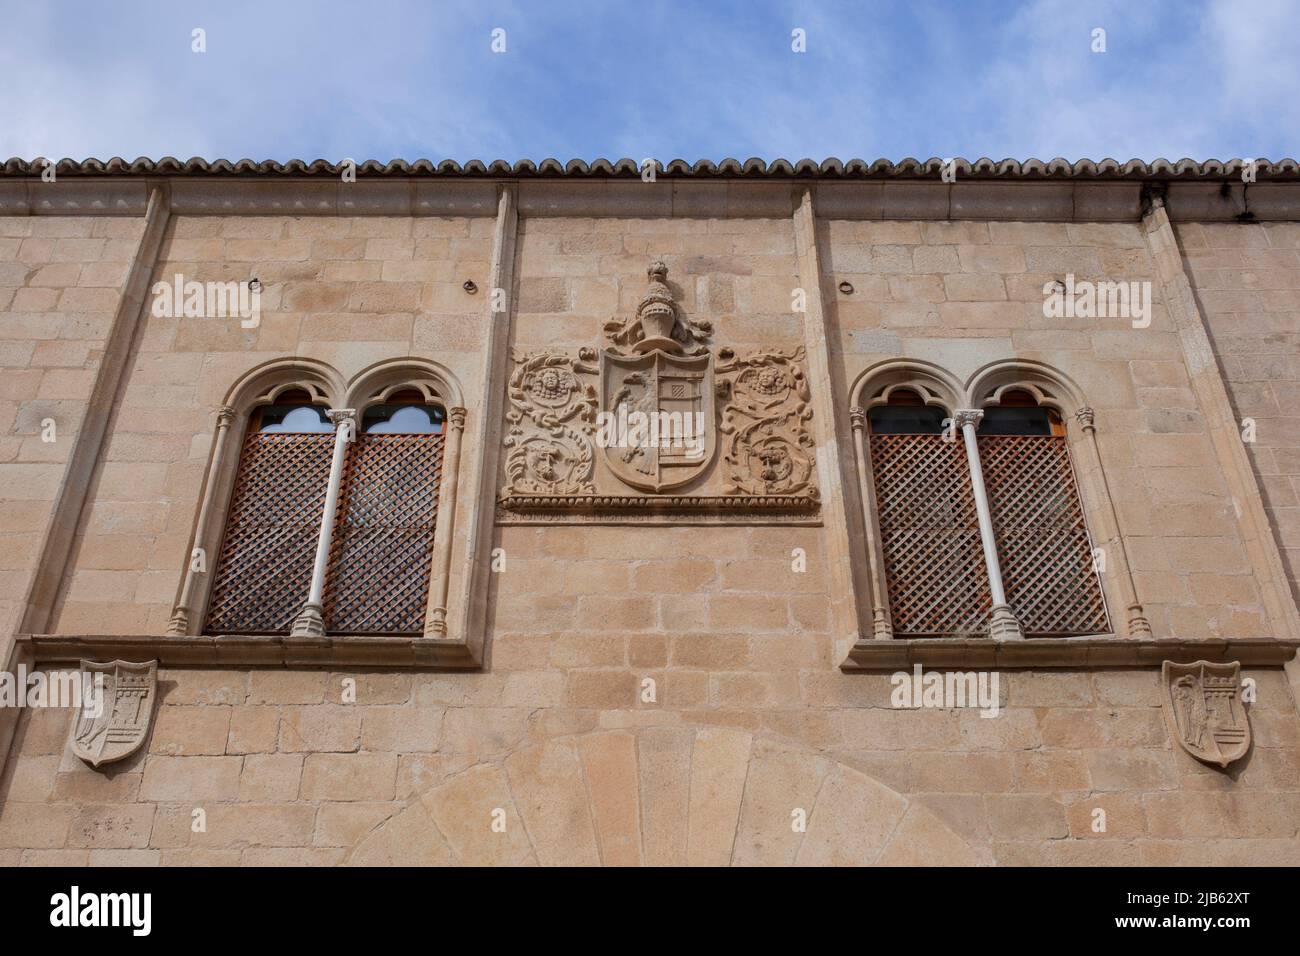 Beautiful mullioned windows at Palace of Mayoralgo. Caceres, Extremadura, Spain. Stock Photo